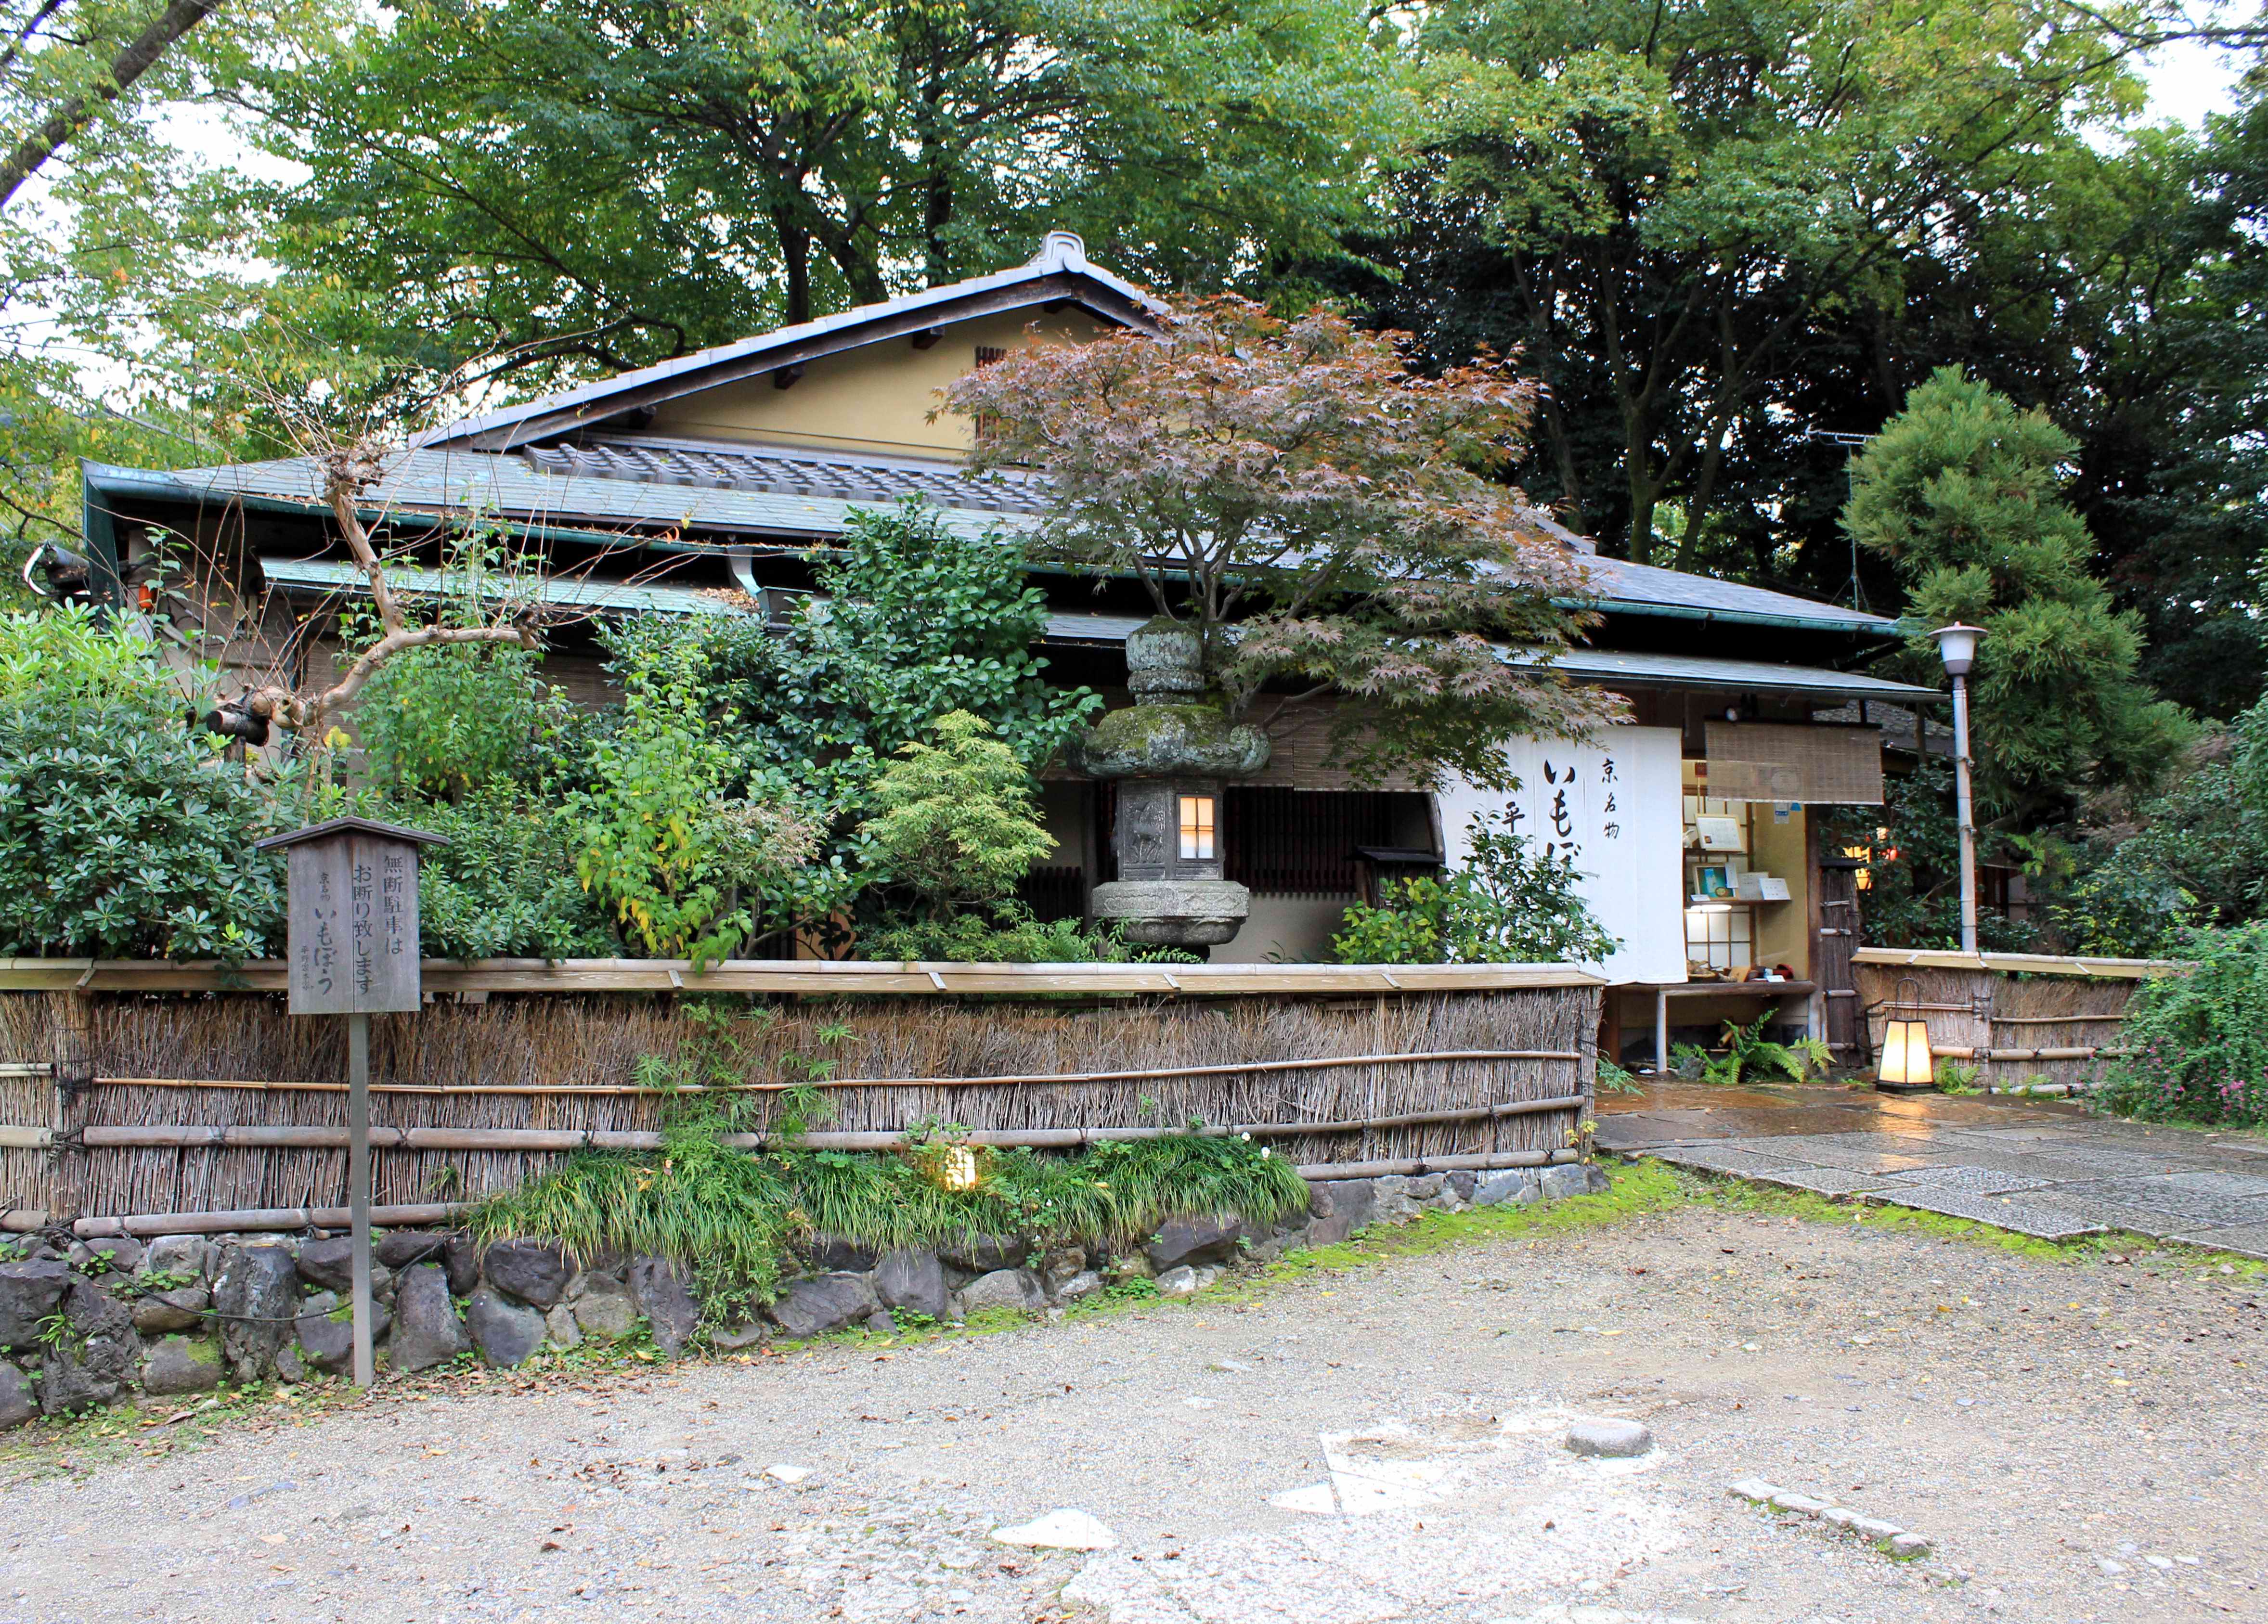 日本幕府庭院图片